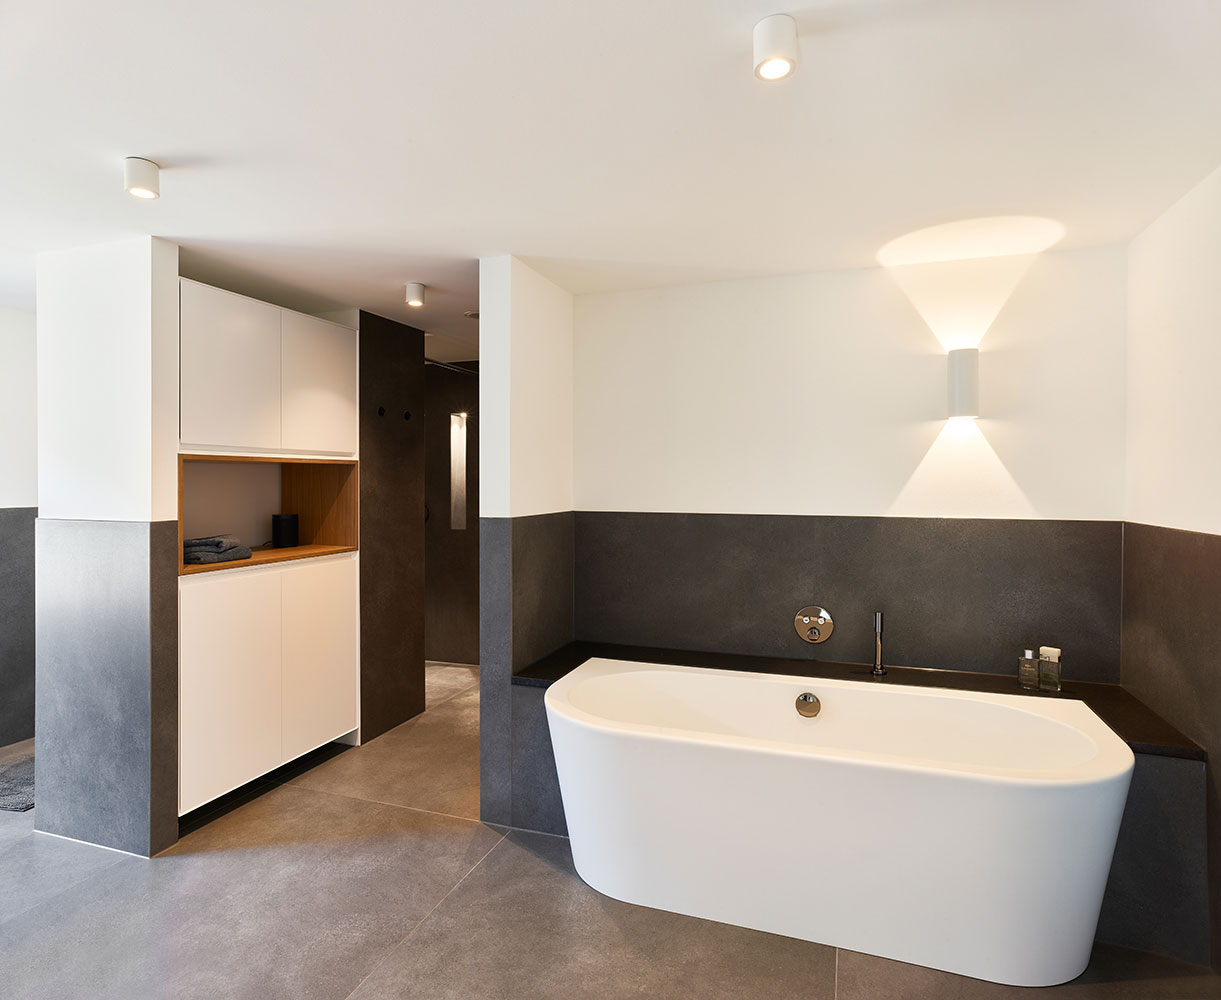 modernes Bad mit Halbeinbauwanne und Einbauschrank, Farbkonzept minimalistisch anthrazit und weiß mit warmen Holzakzenten.